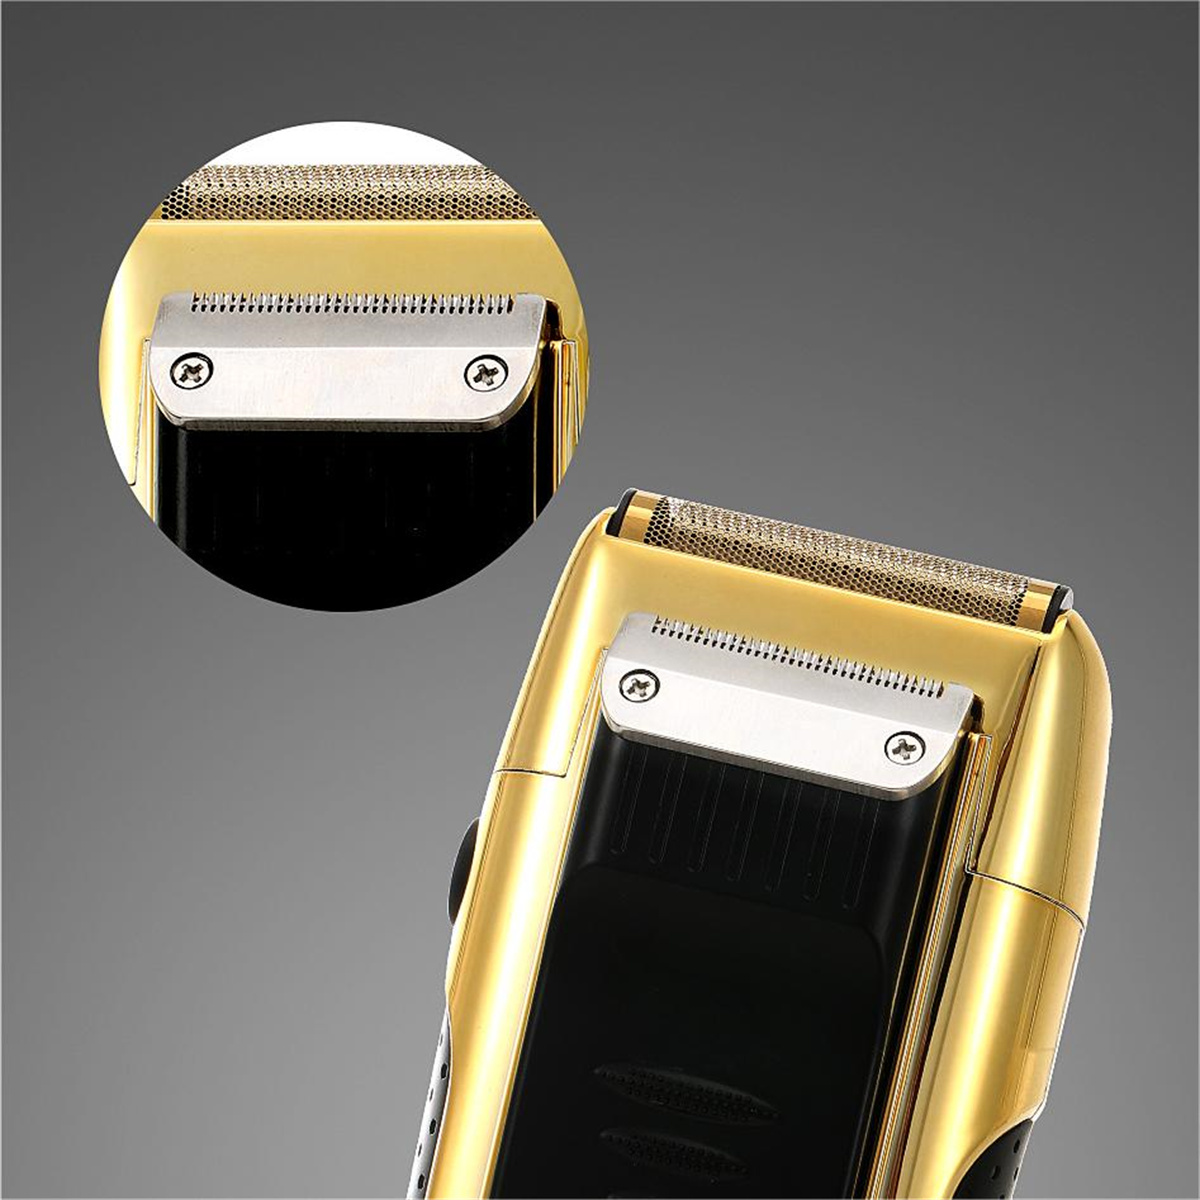 Digitaler Rasierhobel Gold Glatze SHAOKE Drücker Friseur Rasierapparat Ölkopf Elektrischer Bartschneider